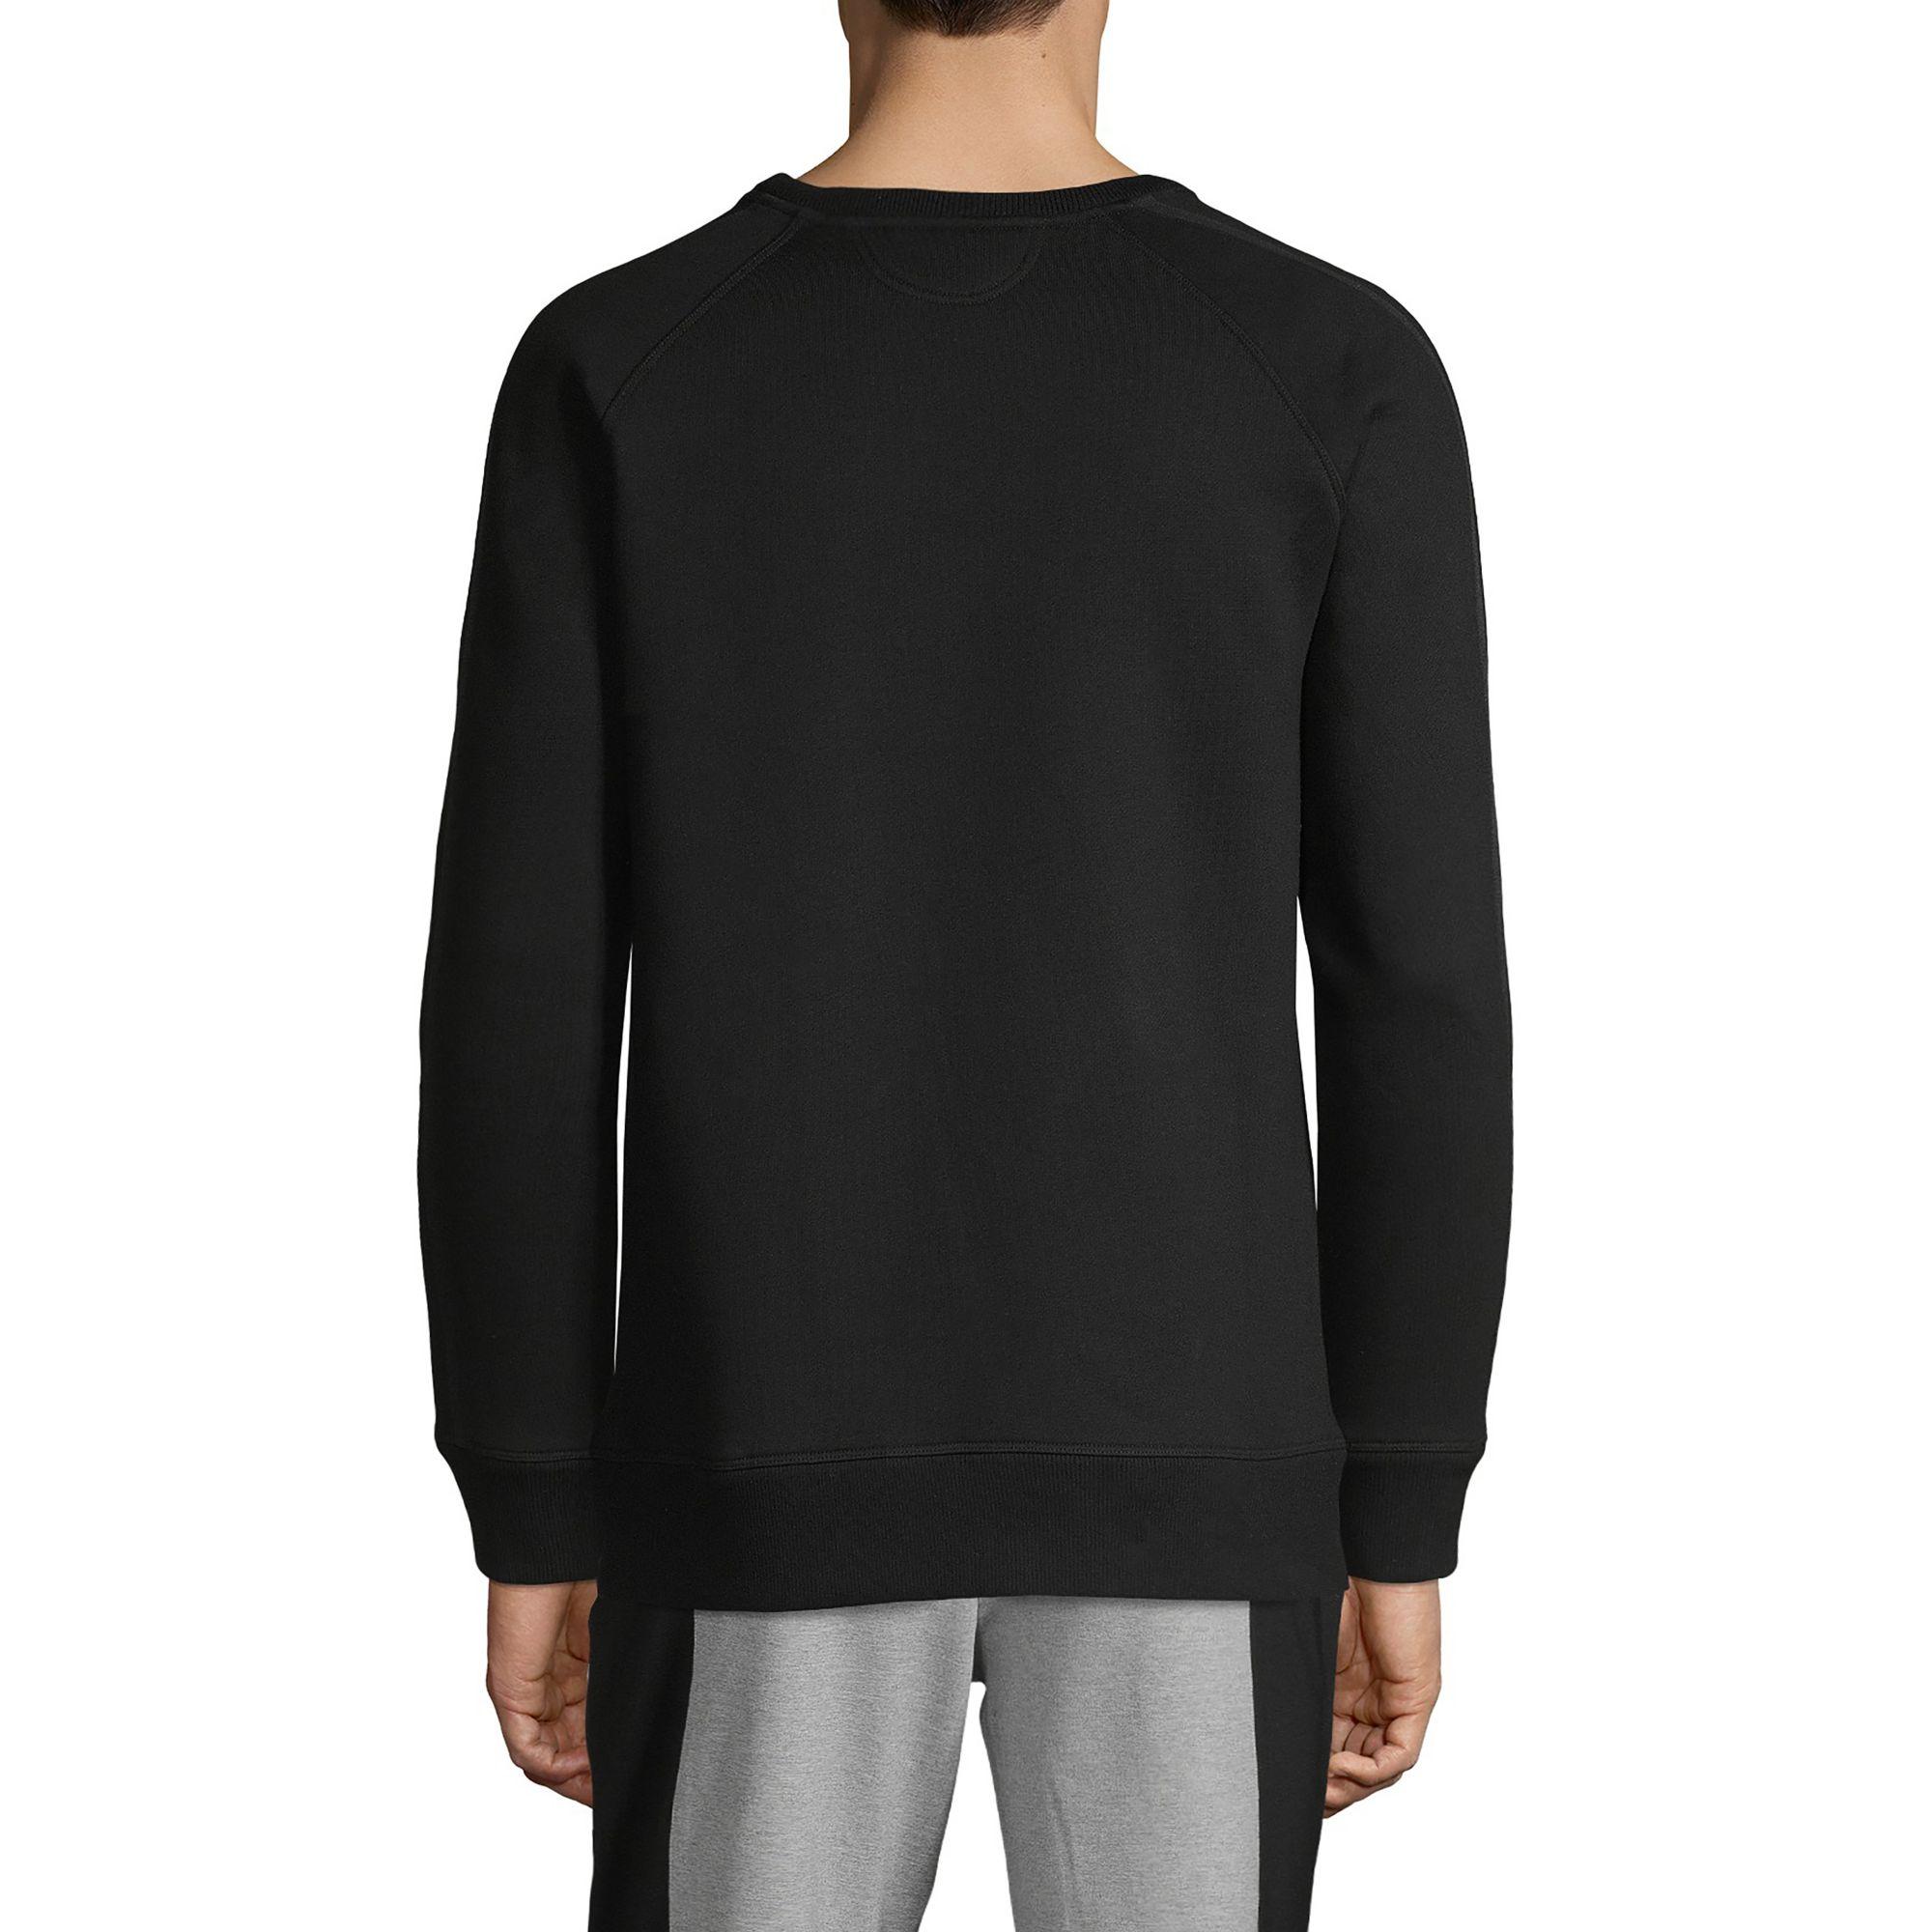 Helmut Lang Crewneck Cotton Blend Sweater in Black for Men - Lyst